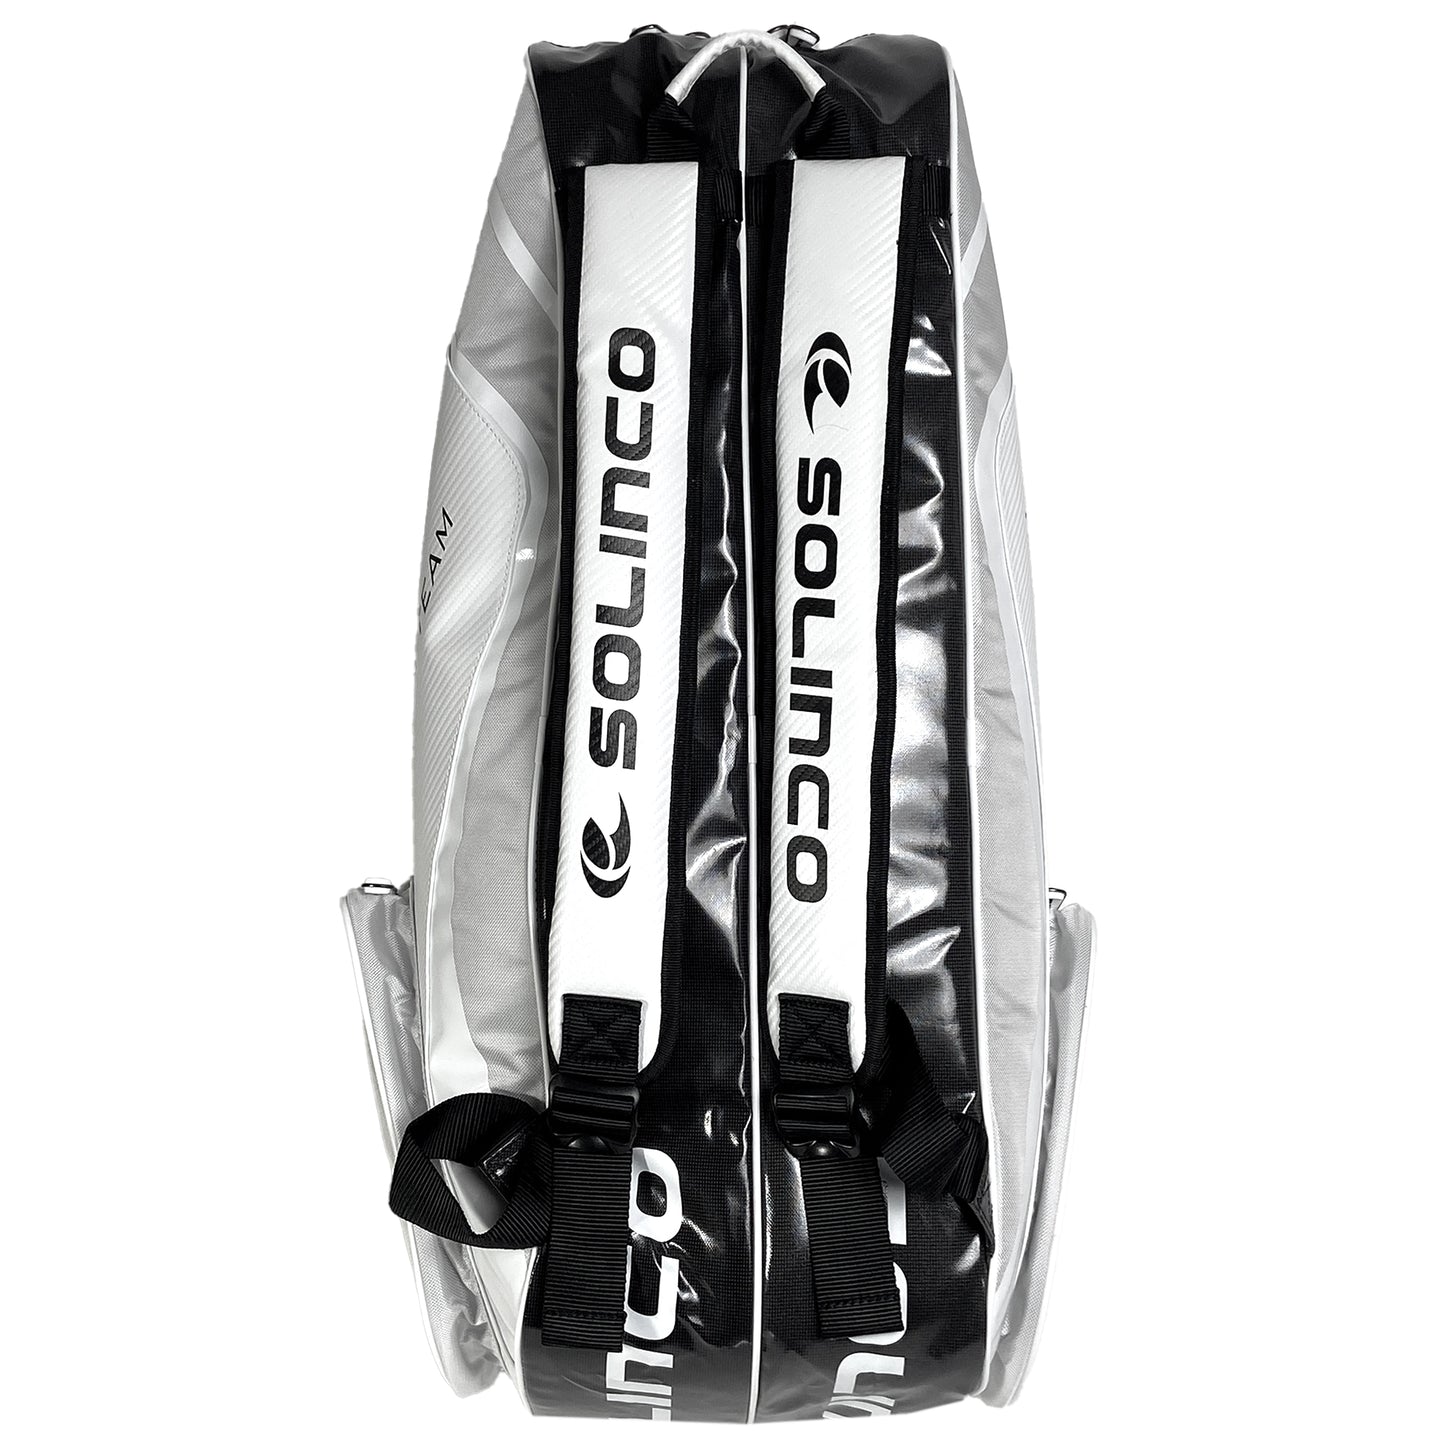 Solinco Tour Racquet Bag 6R Whiteout